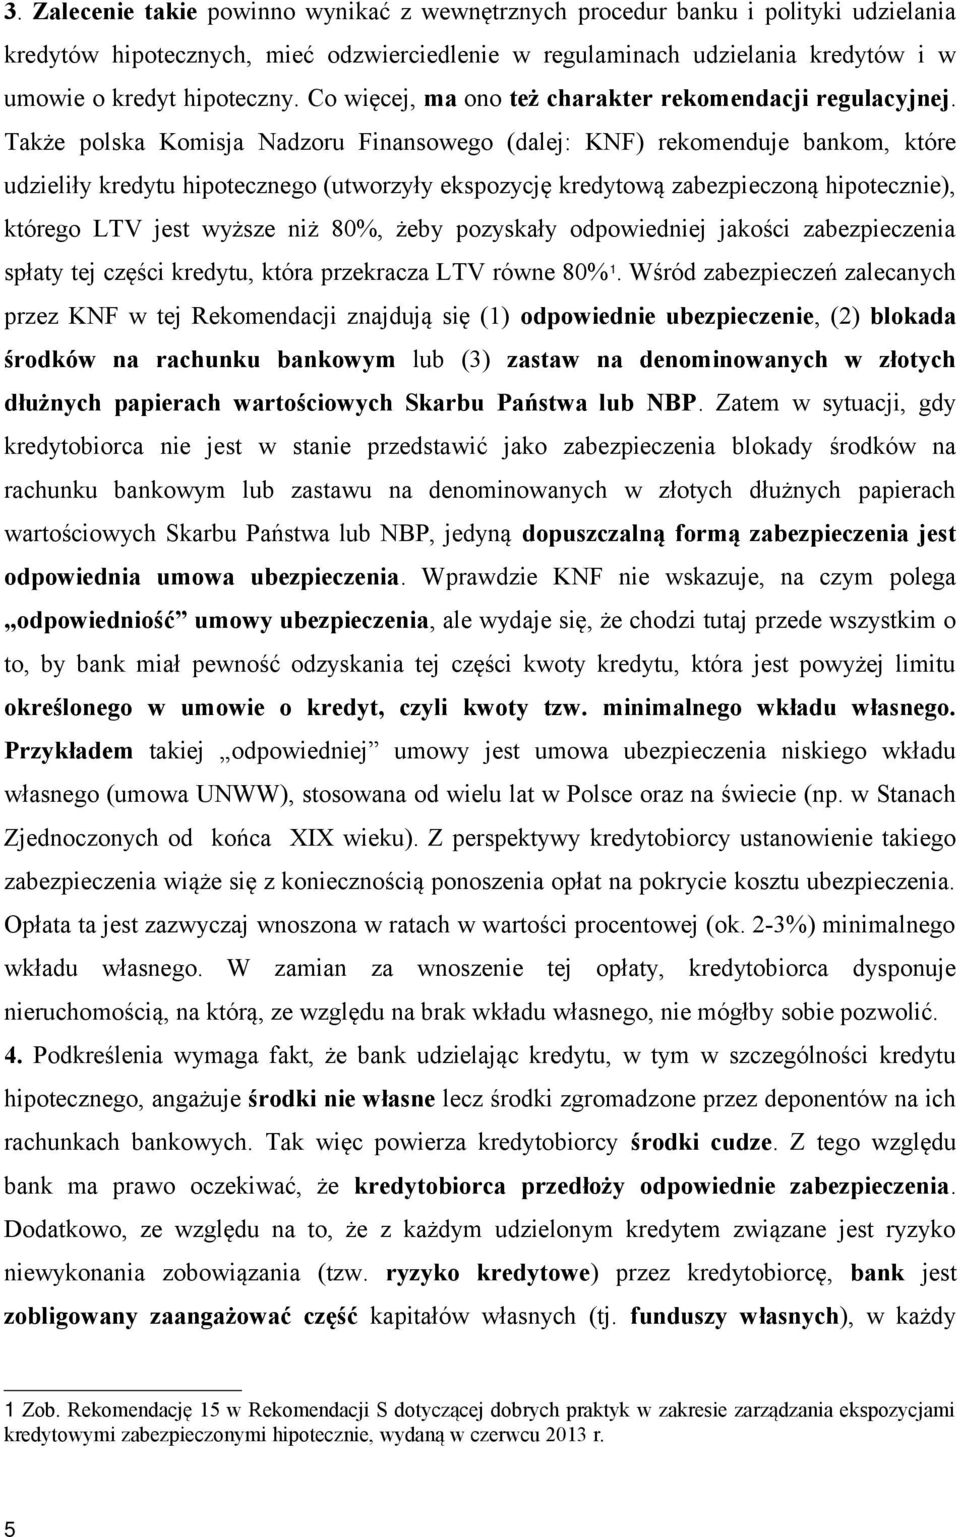 Także polska Komisja Nadzoru Finansowego (dalej: KNF) rekomenduje bankom, które udzieliły kredytu hipotecznego (utworzyły ekspozycję kredytową zabezpieczoną hipotecznie), którego LTV jest wyższe niż